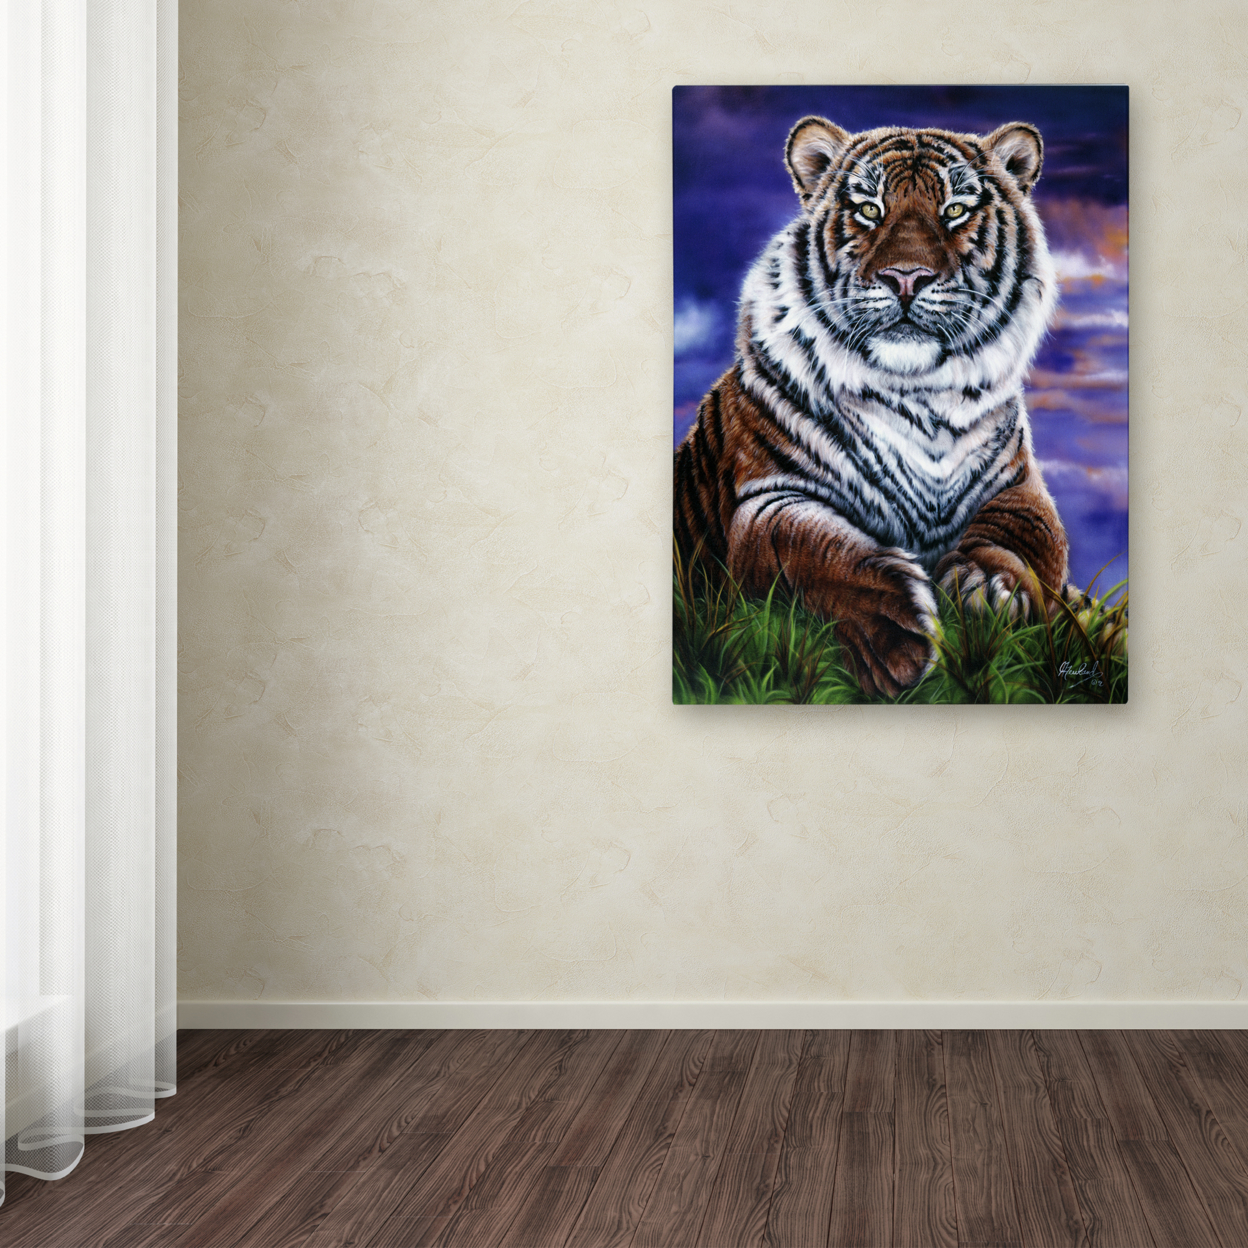 Jenny Newland 'Arizona Tiger' Canvas Wall Art 35 X 47 Inches